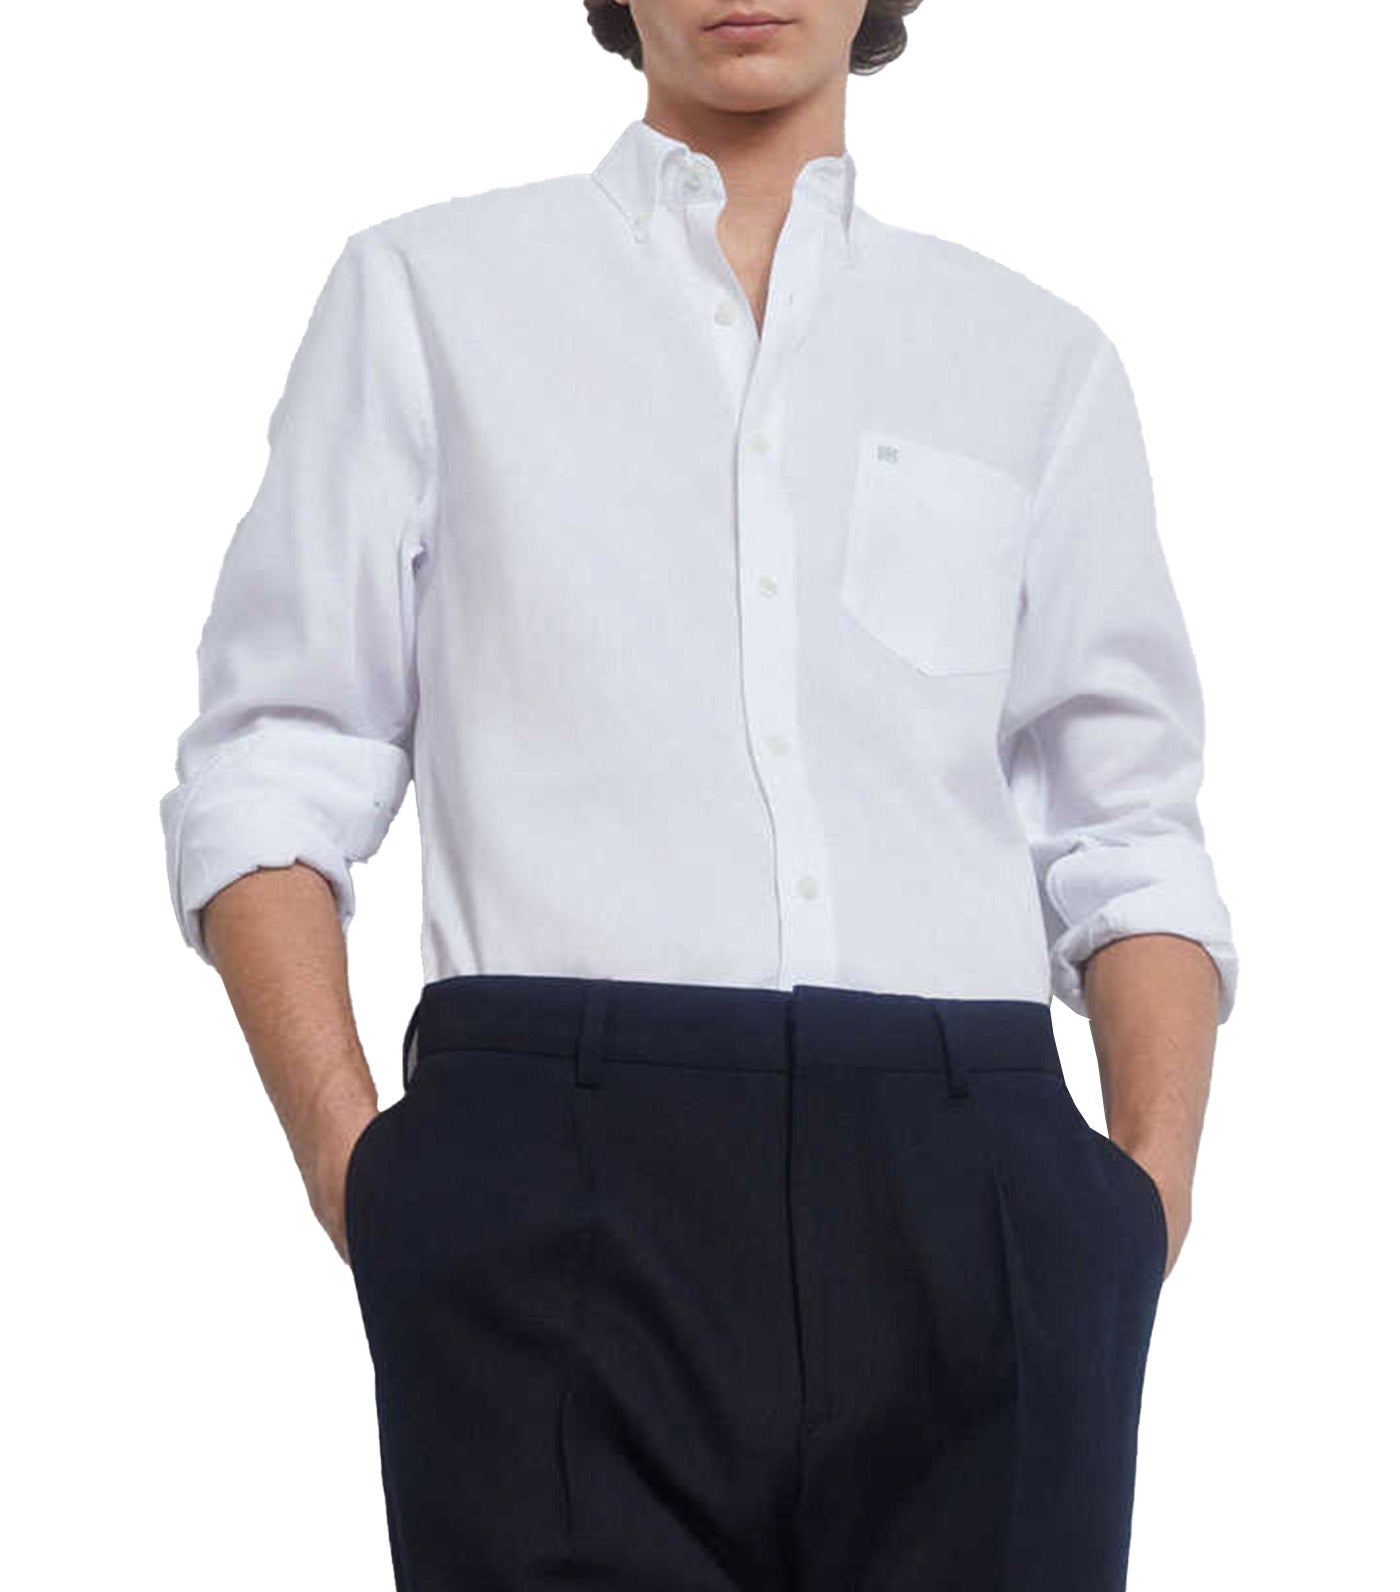 Plain Non Iron Oxford Shirt White